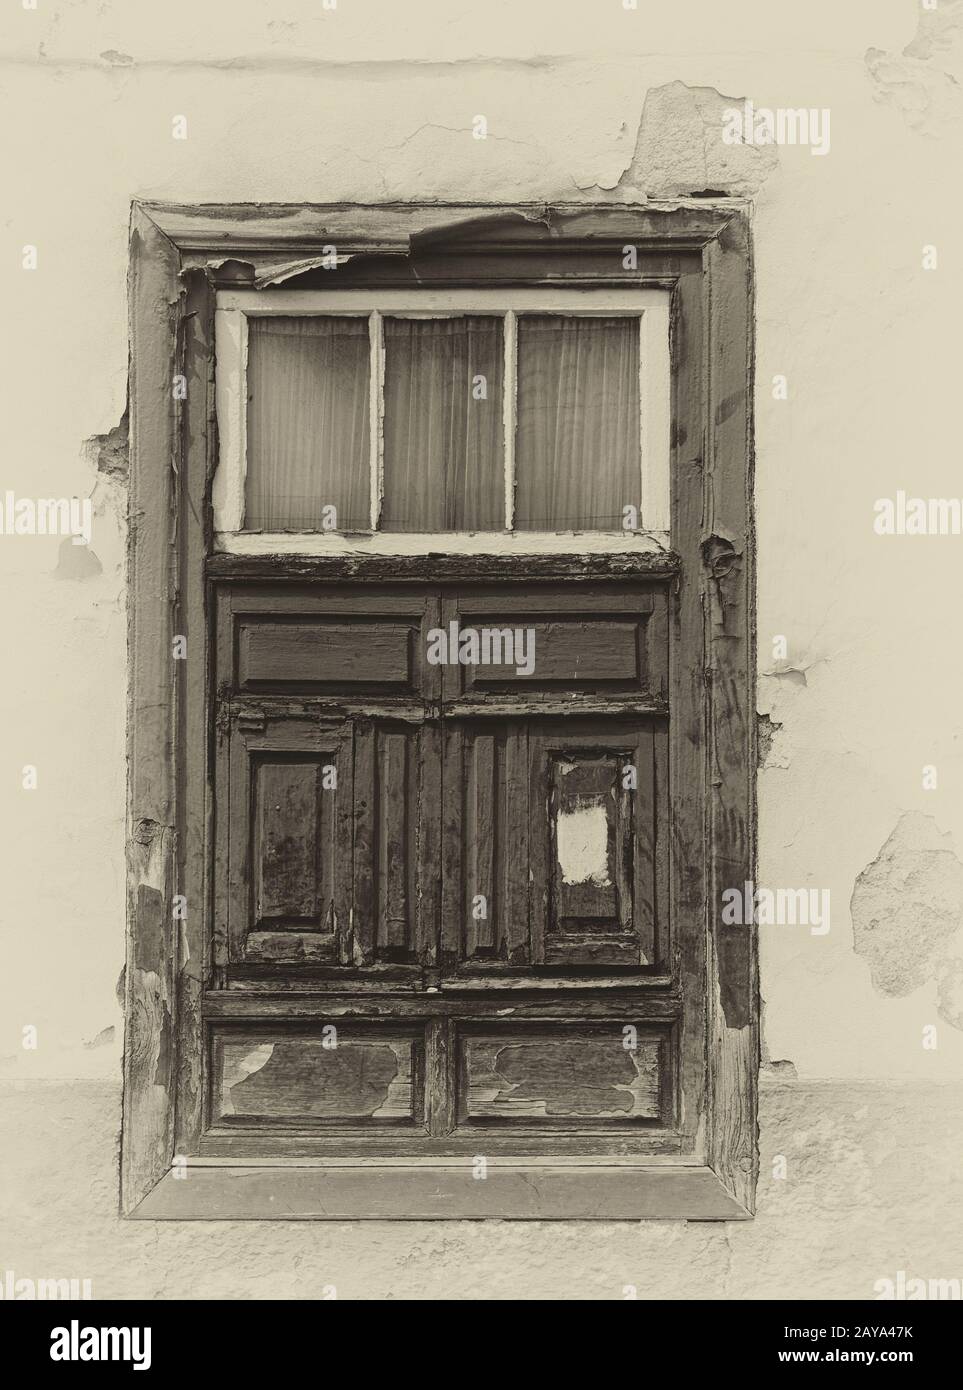 une image sépia d'une vieille fenêtre à volets espagnols dans une maison traditionnelle avec des murs en plâtre délavés Banque D'Images